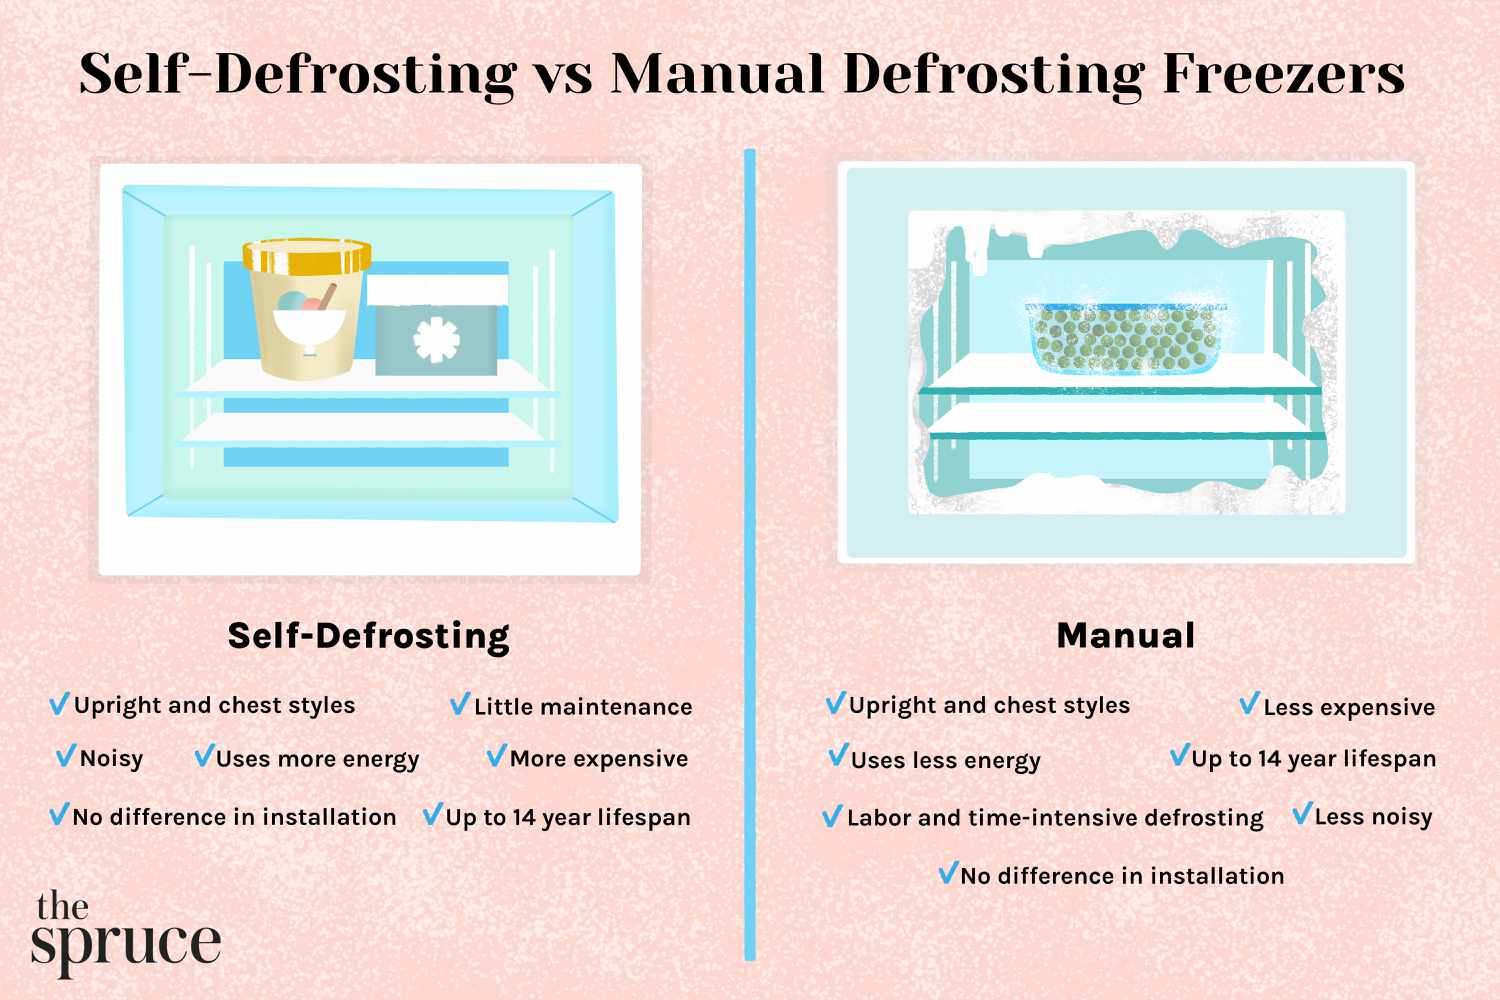 Self-Defrosting vs Manual Defrosting Freezers